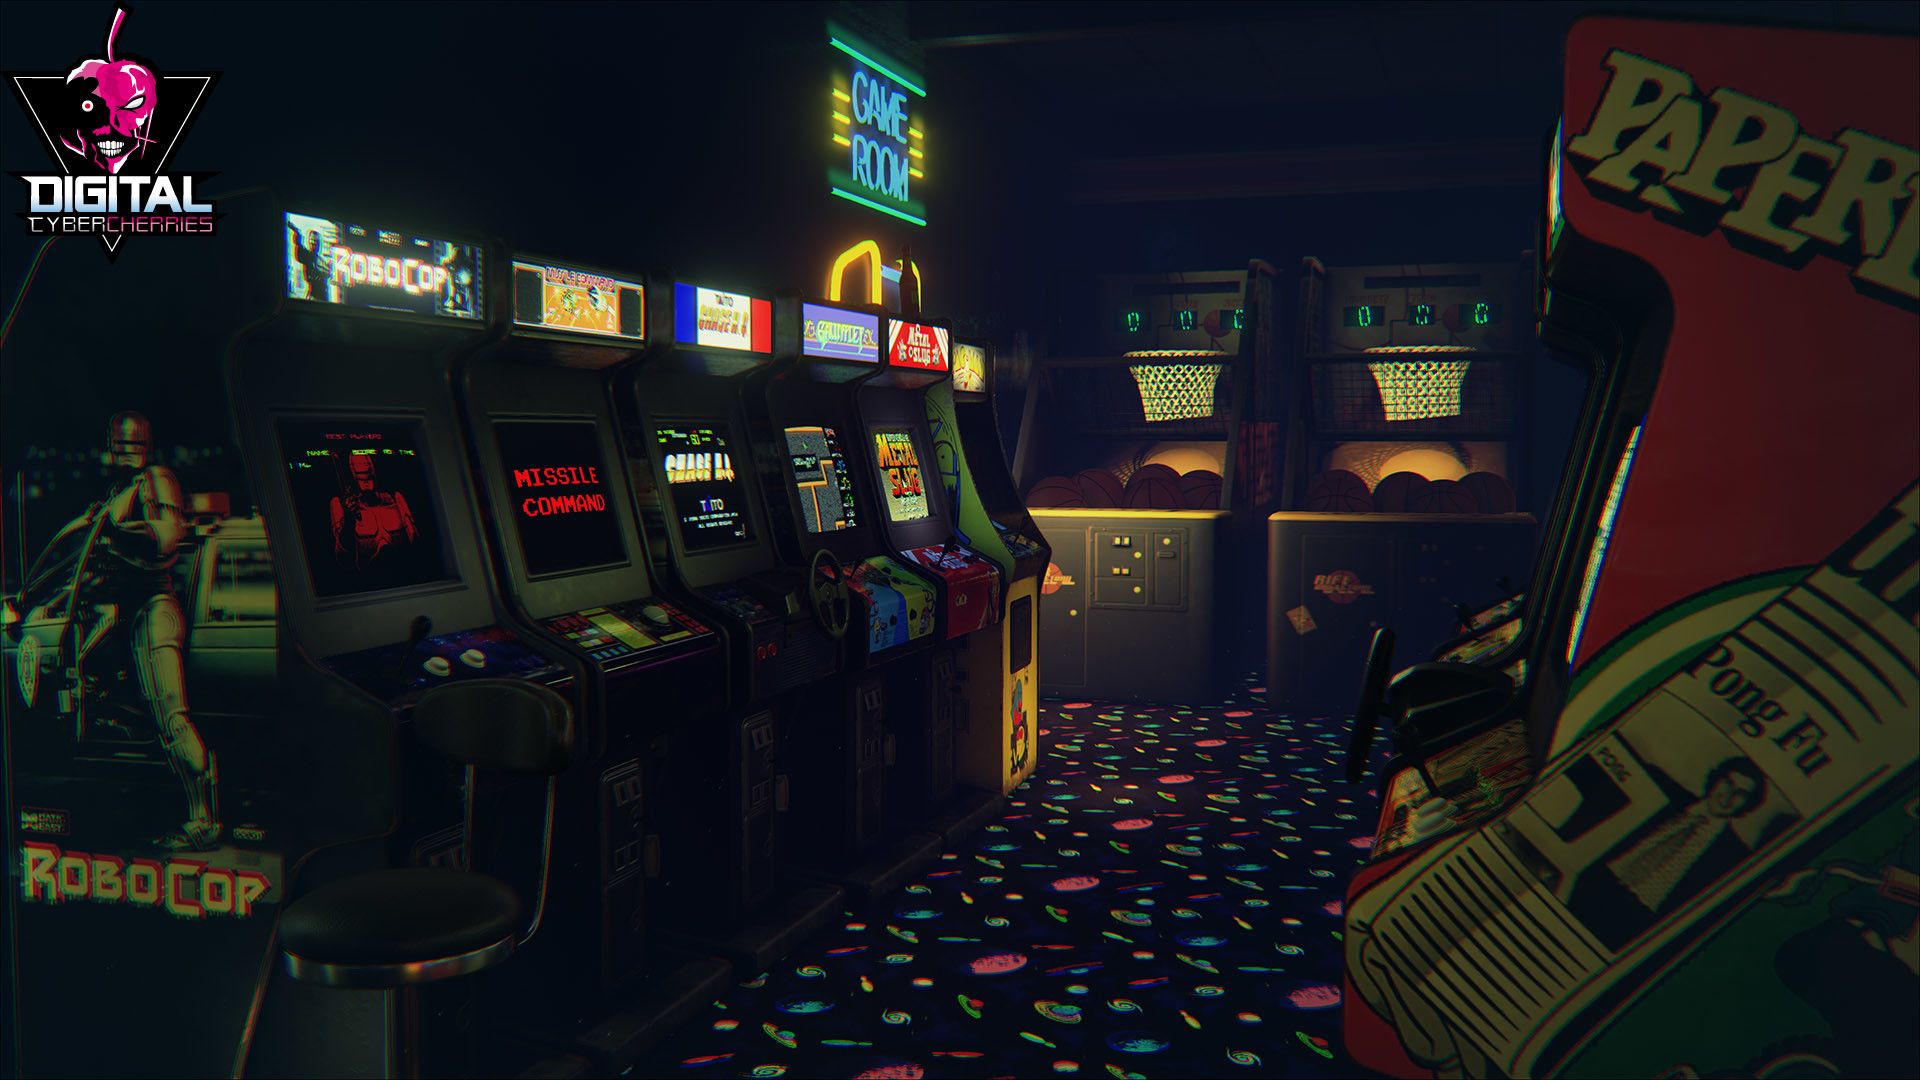 Làm mới không gian máy tính của bạn với hình nền game Arcade cổ điển tuyệt đẹp từ WallpaperDog. Hình ảnh chân thực và sắc nét sẽ đưa bạn trở lại những ngày tháng yêu dấu của tuổi thơ và cơn cuồng nhiệt với trò chơi video cổ điển.